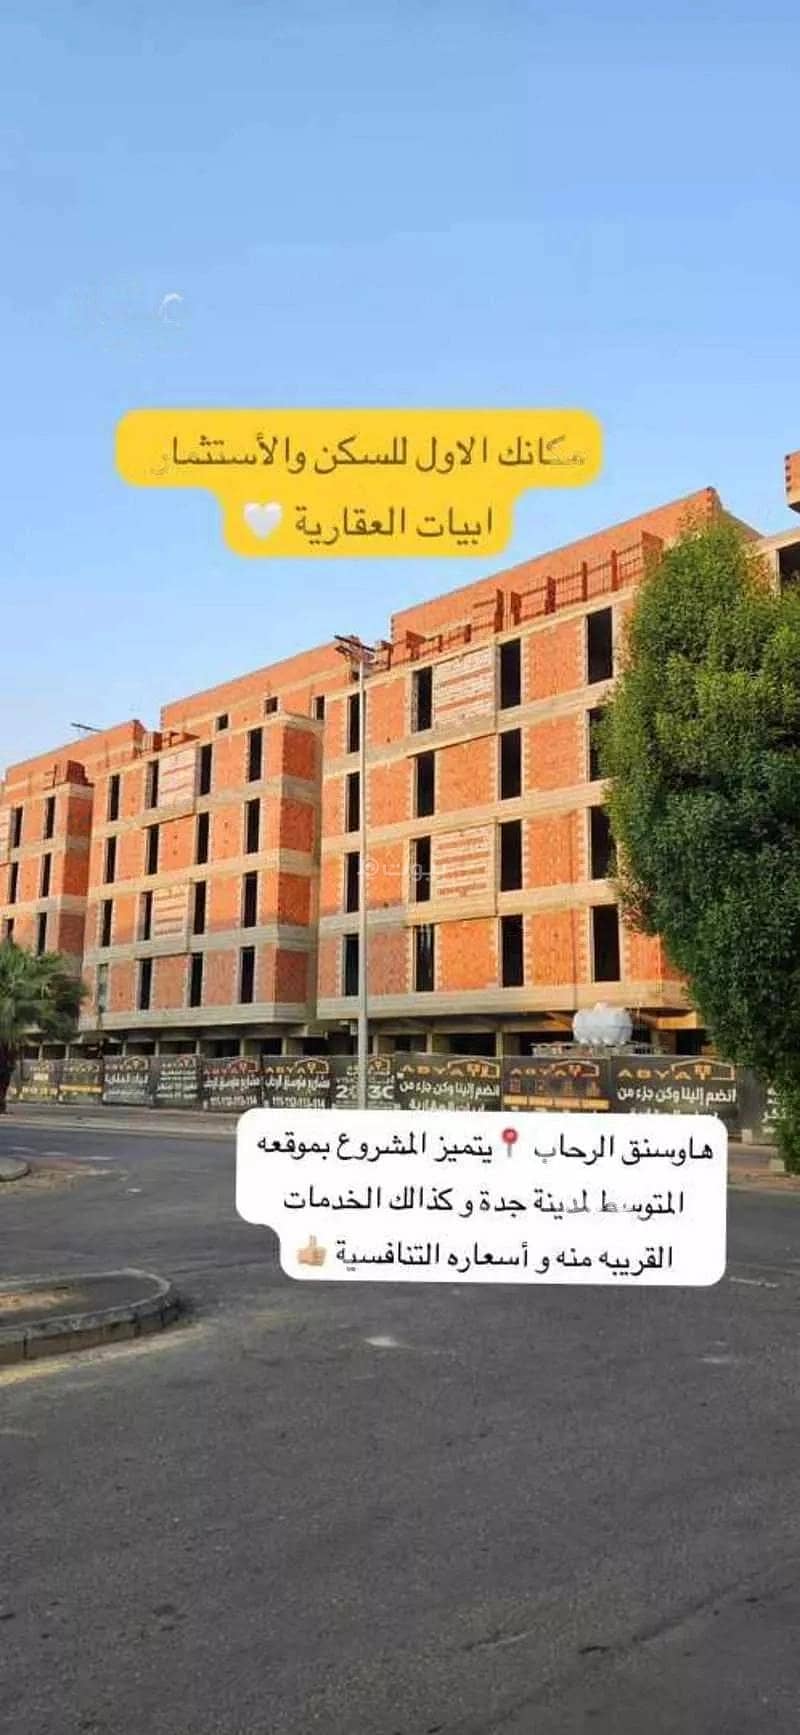 5 BHK Apartment For Sale, Al Rahab Street, Jeddah